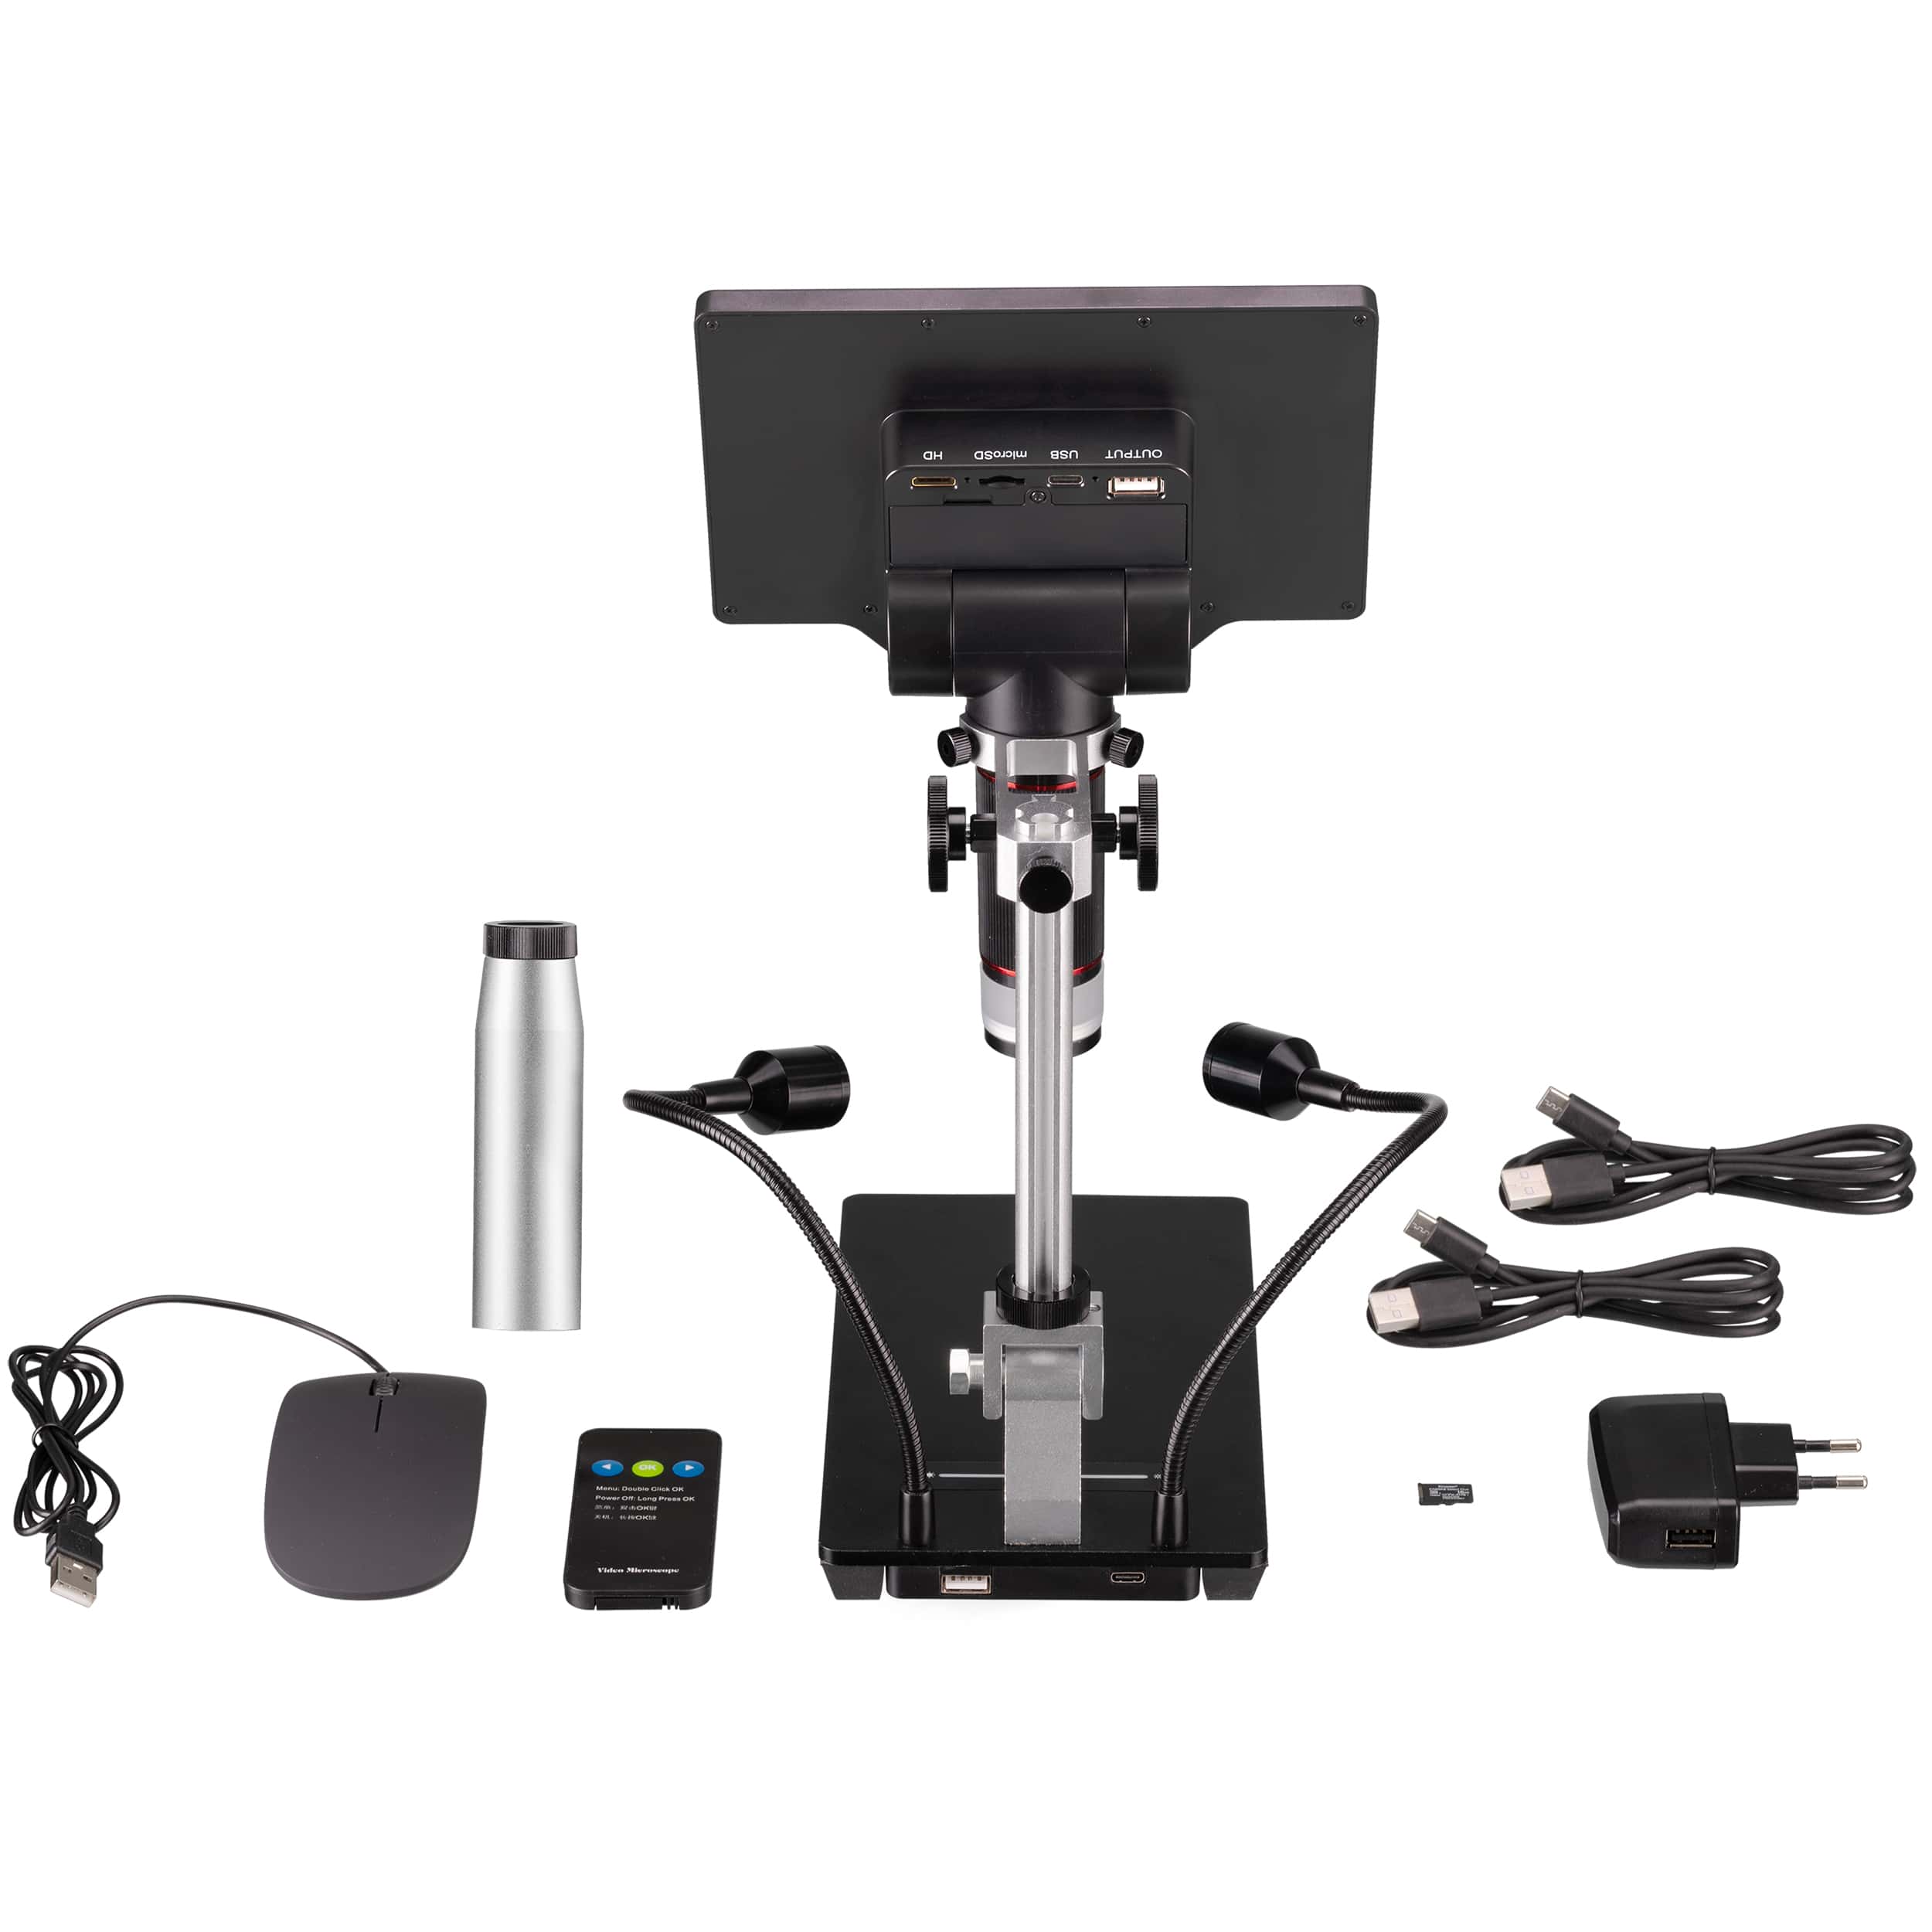   Microscopio digitale versatile a luce riflessa con WLAN, funzione di registrazione foto/video, telecamera con messa a fuoco all'infinito e illuminazione regolabile  